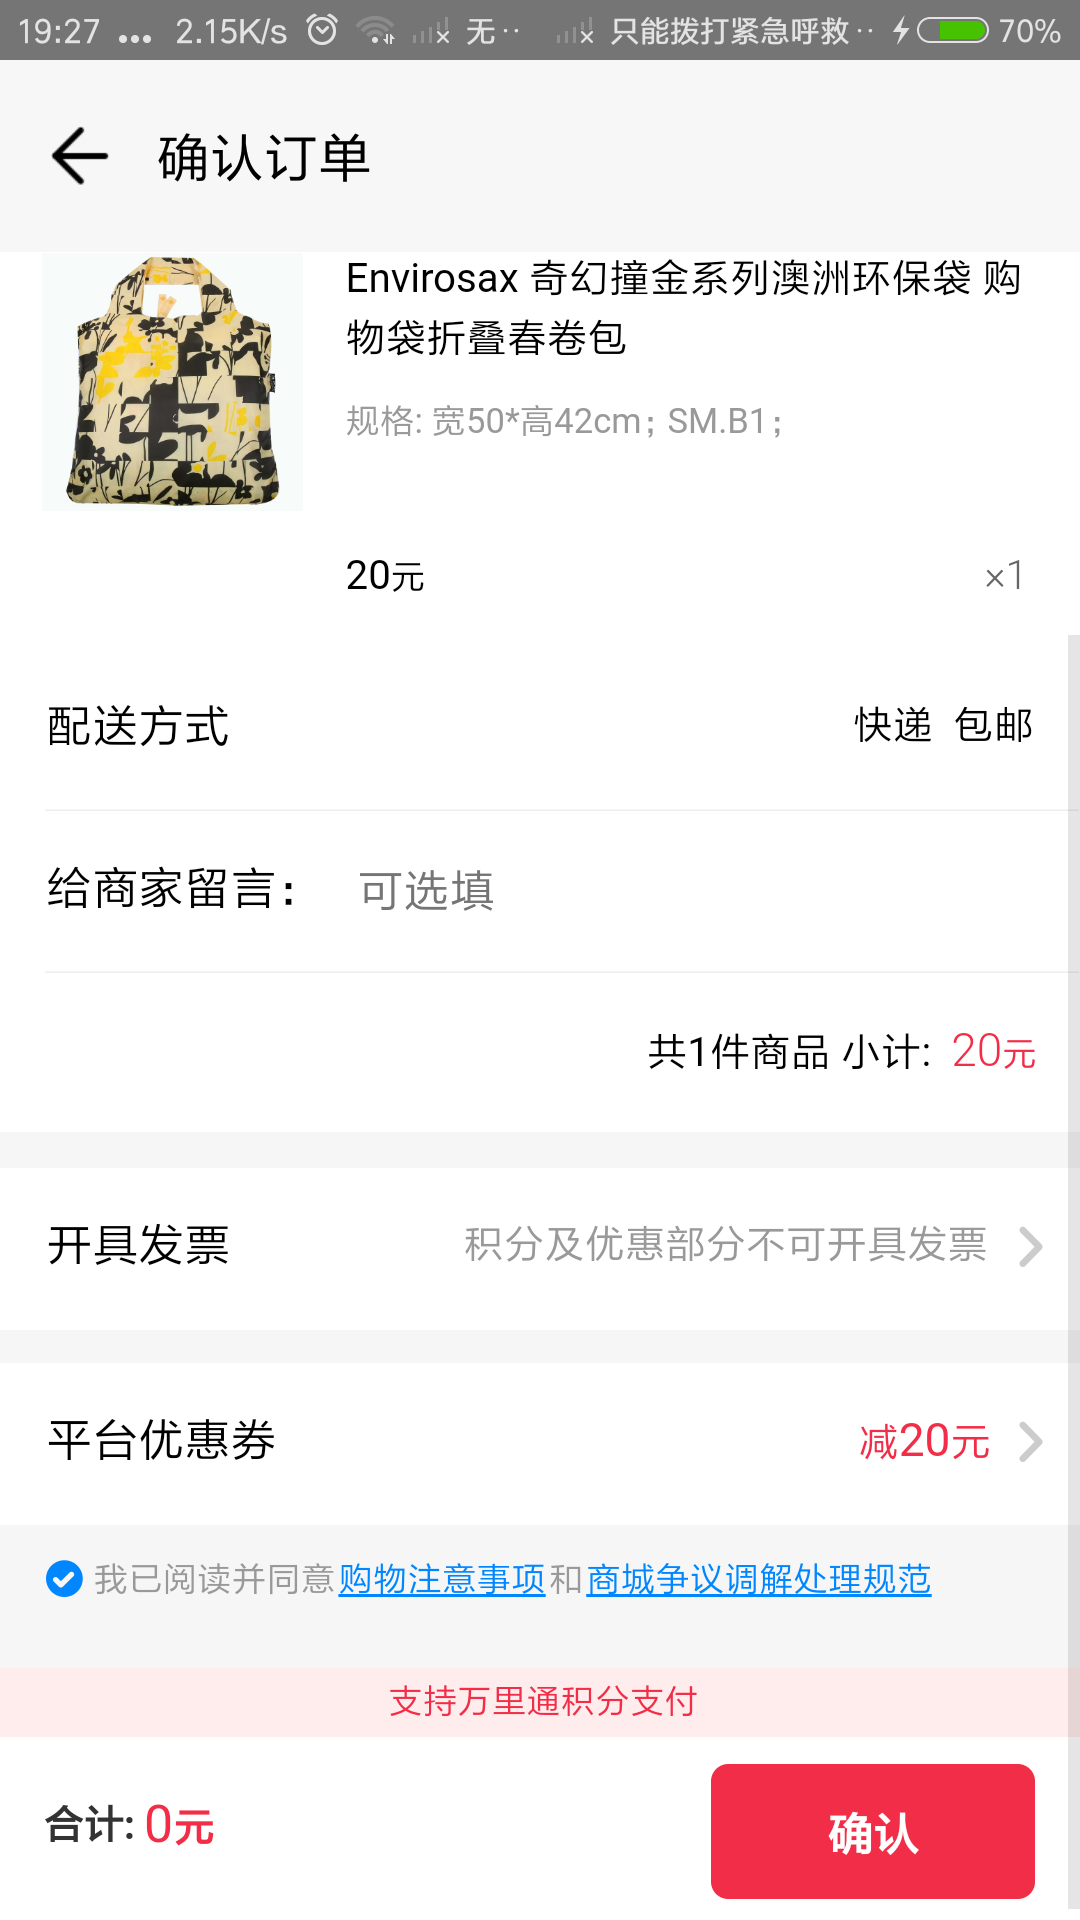 Screenshot_2018-07-24-19-27-38-672_com.paic.zhifu.wallet.activity.png